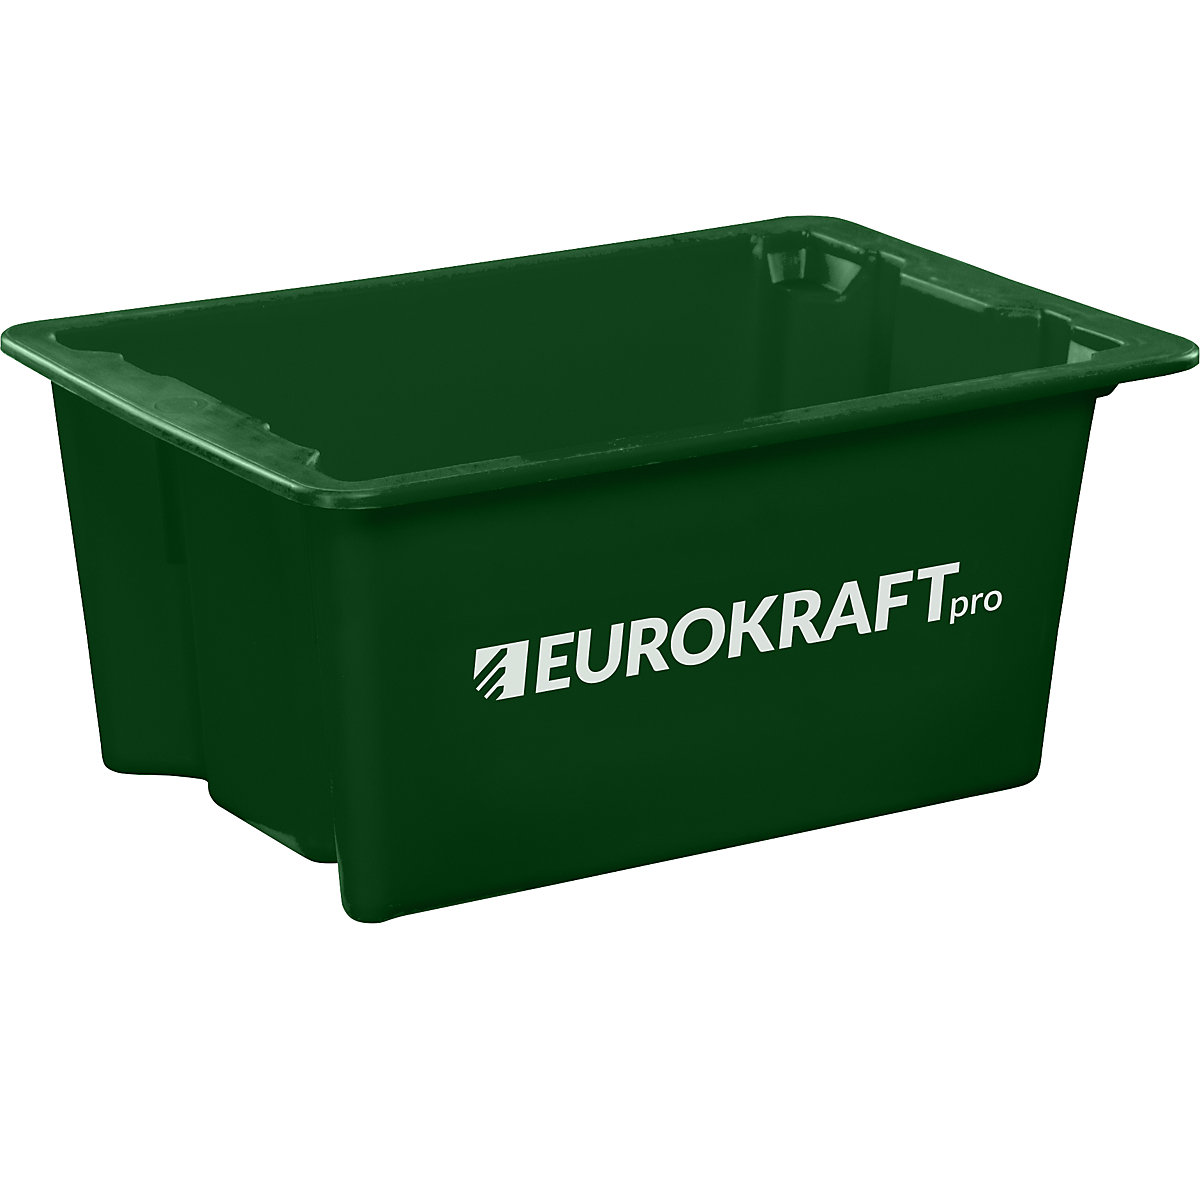 EUROKRAFTpro – Otočná stohovací nádoba z polypropylenu vhodného pro potraviny, obsah 6 litrů, bal.j. 4 ks, stěny a dno plné, zelená